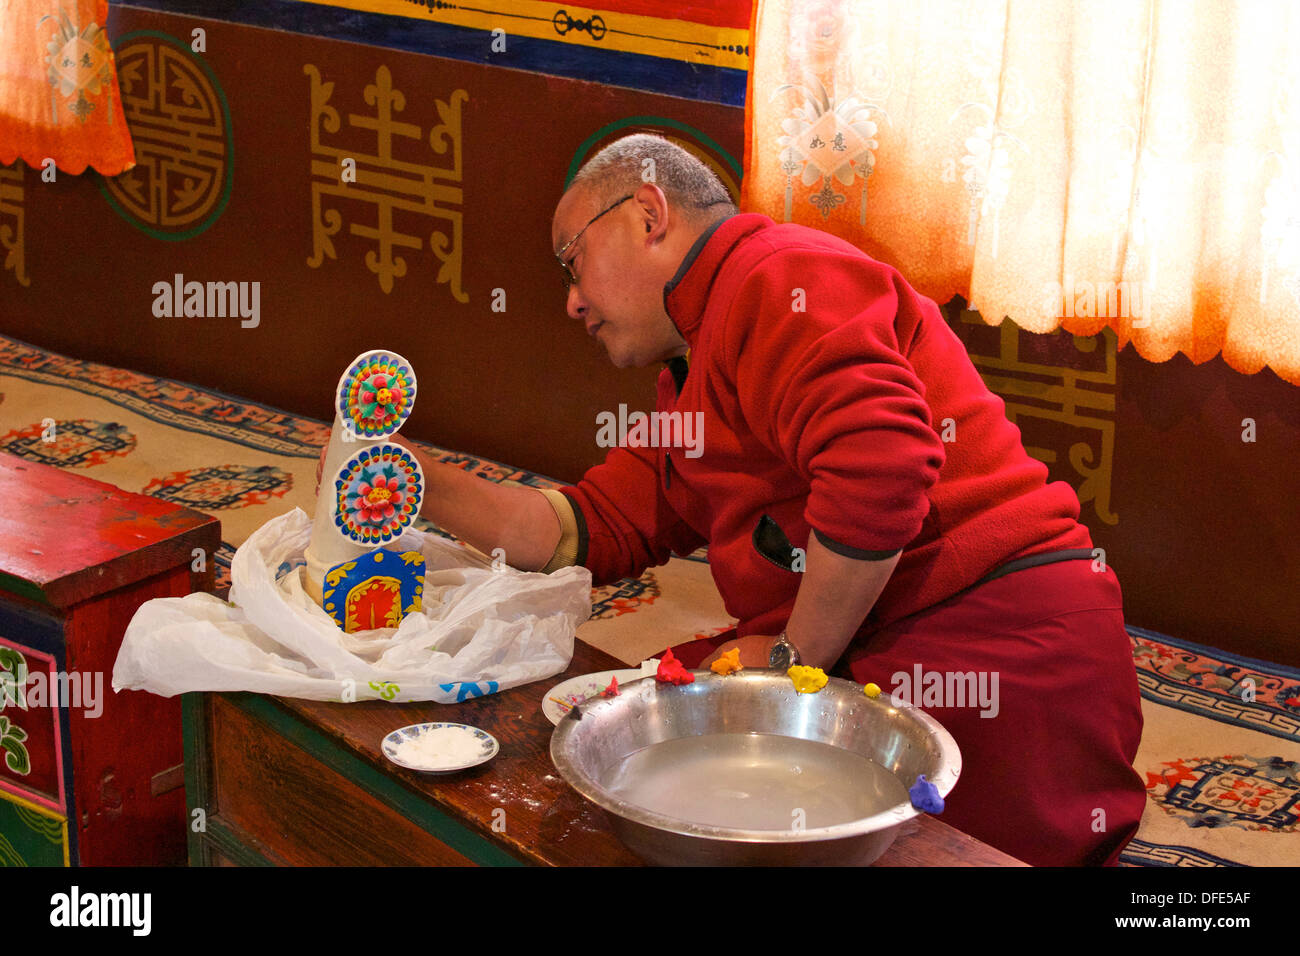 Prêtre bouddhiste travaillant sur la sculpture en plâtre peint, Namche Bazar Namche, monastère, Népal, Asie Banque D'Images